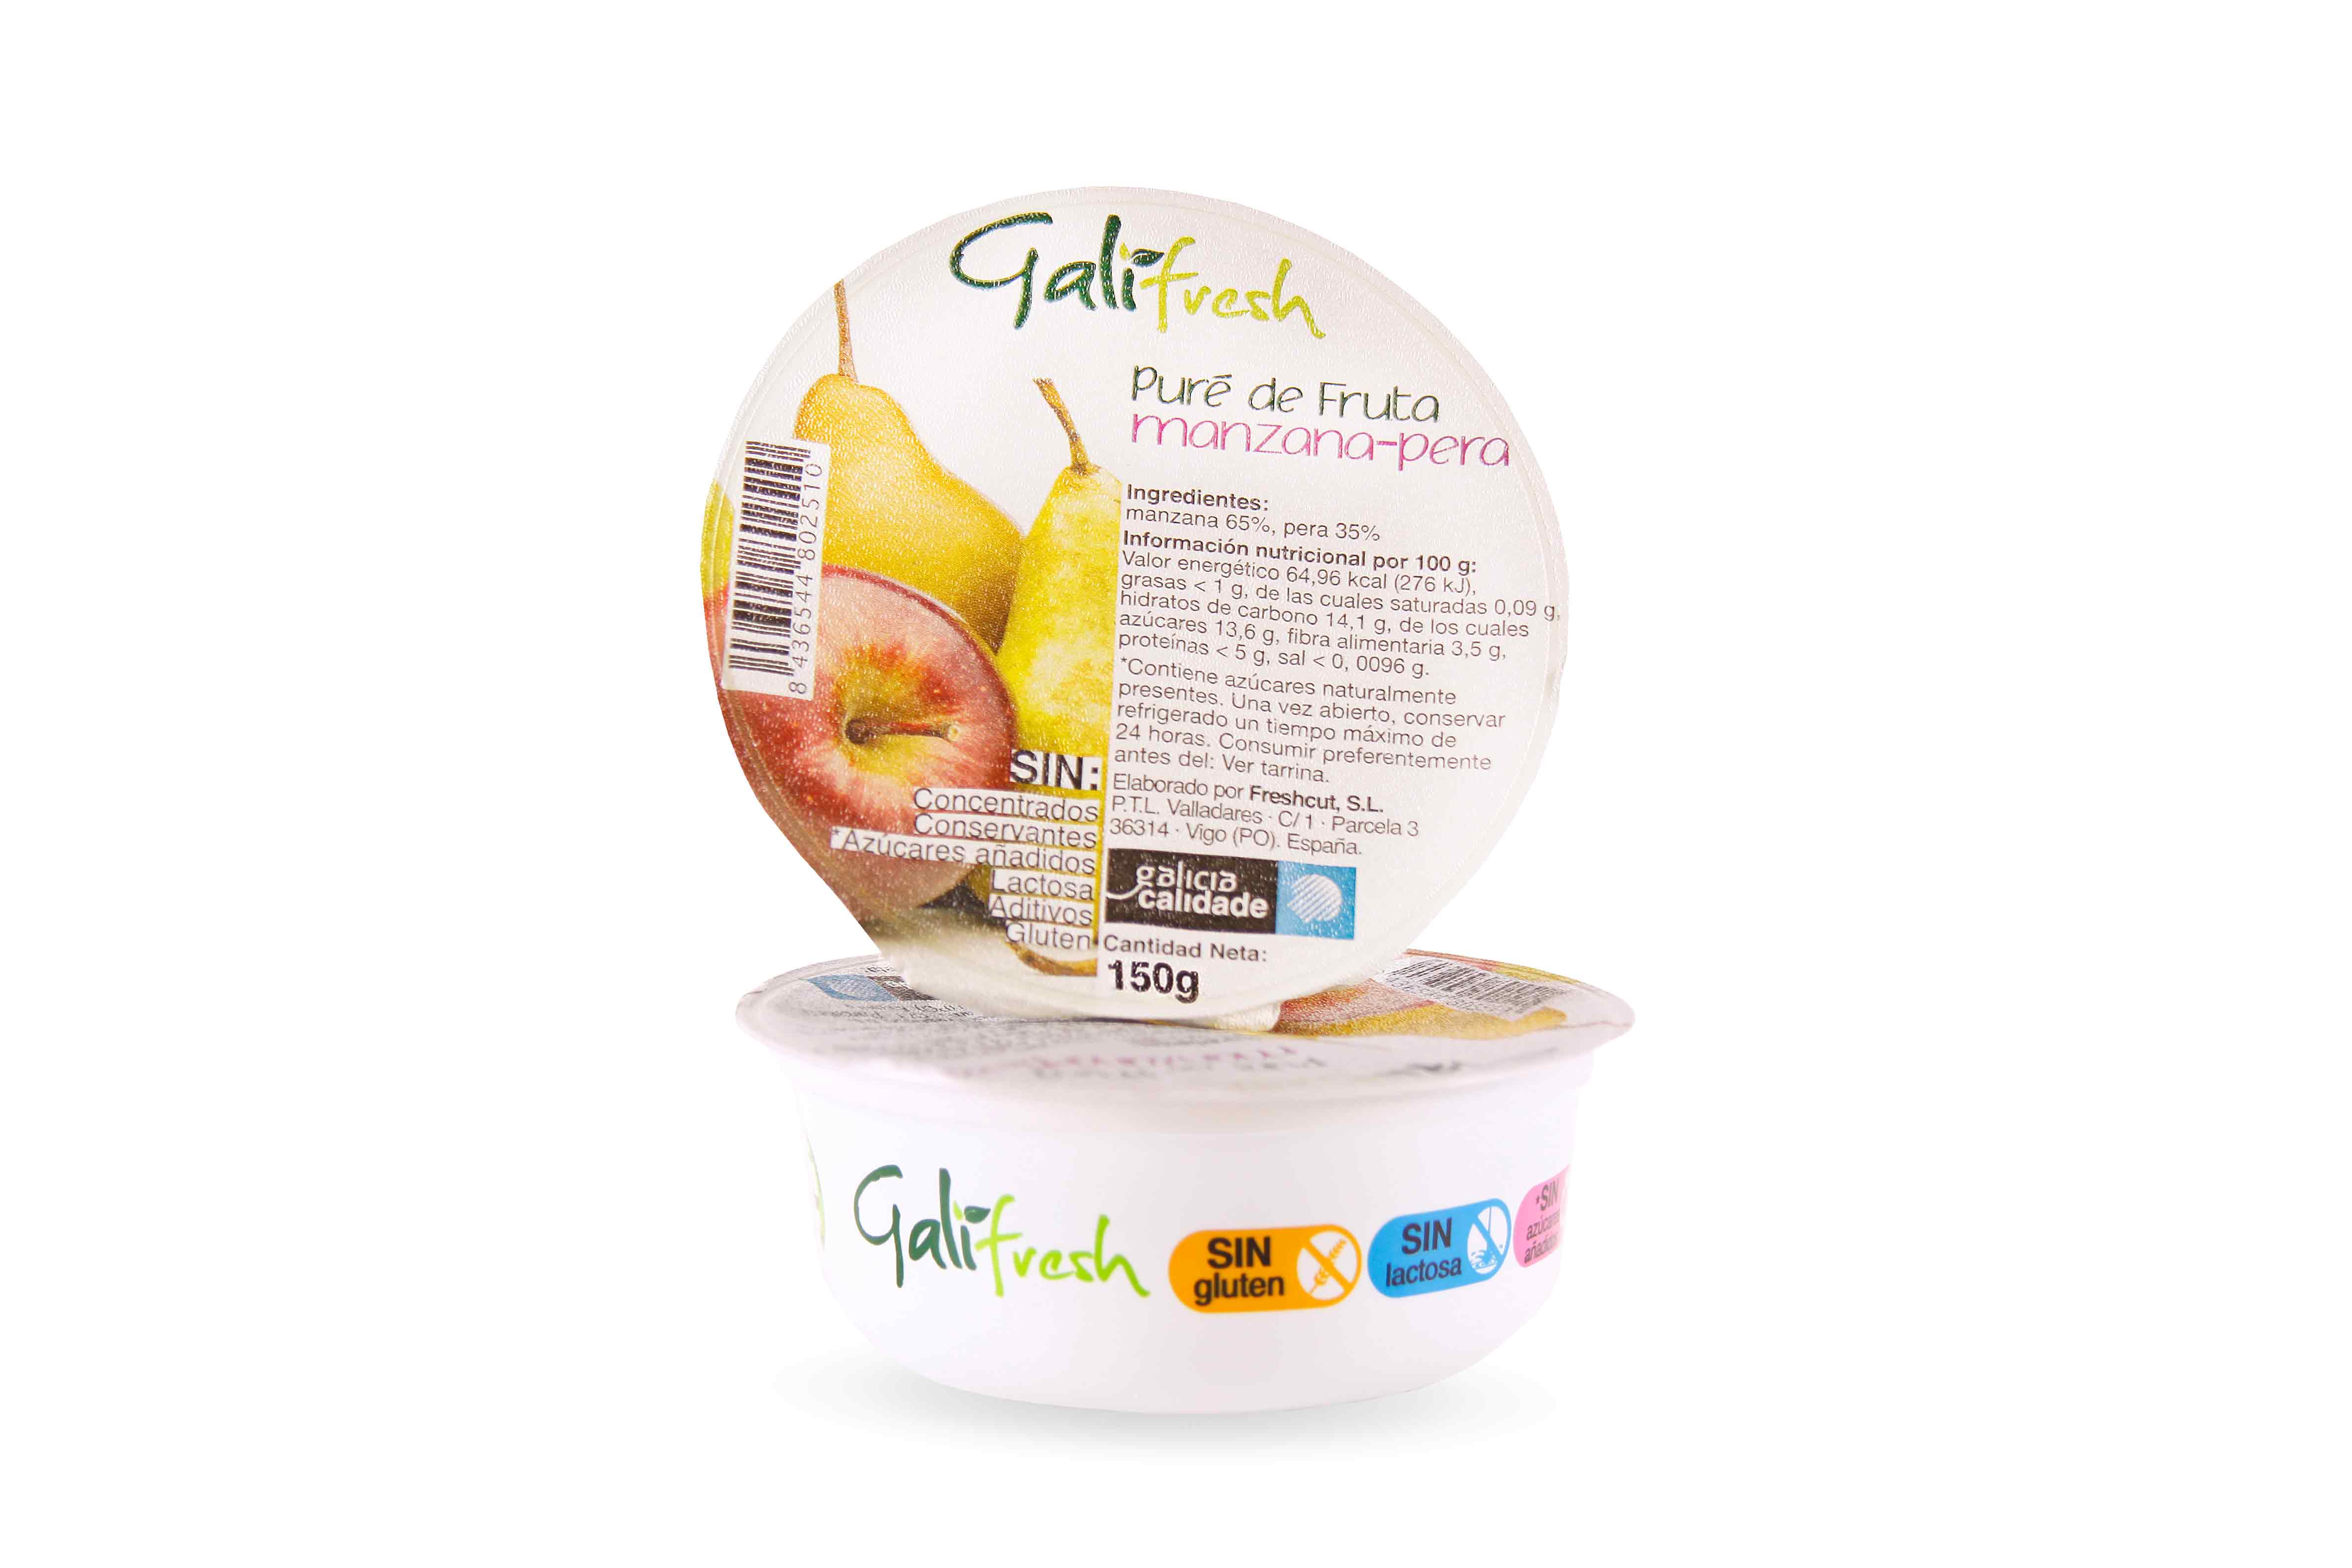 Deliciosos Purés de Frutas Galifresh: Sabor y Nutrición en un Solo Producto